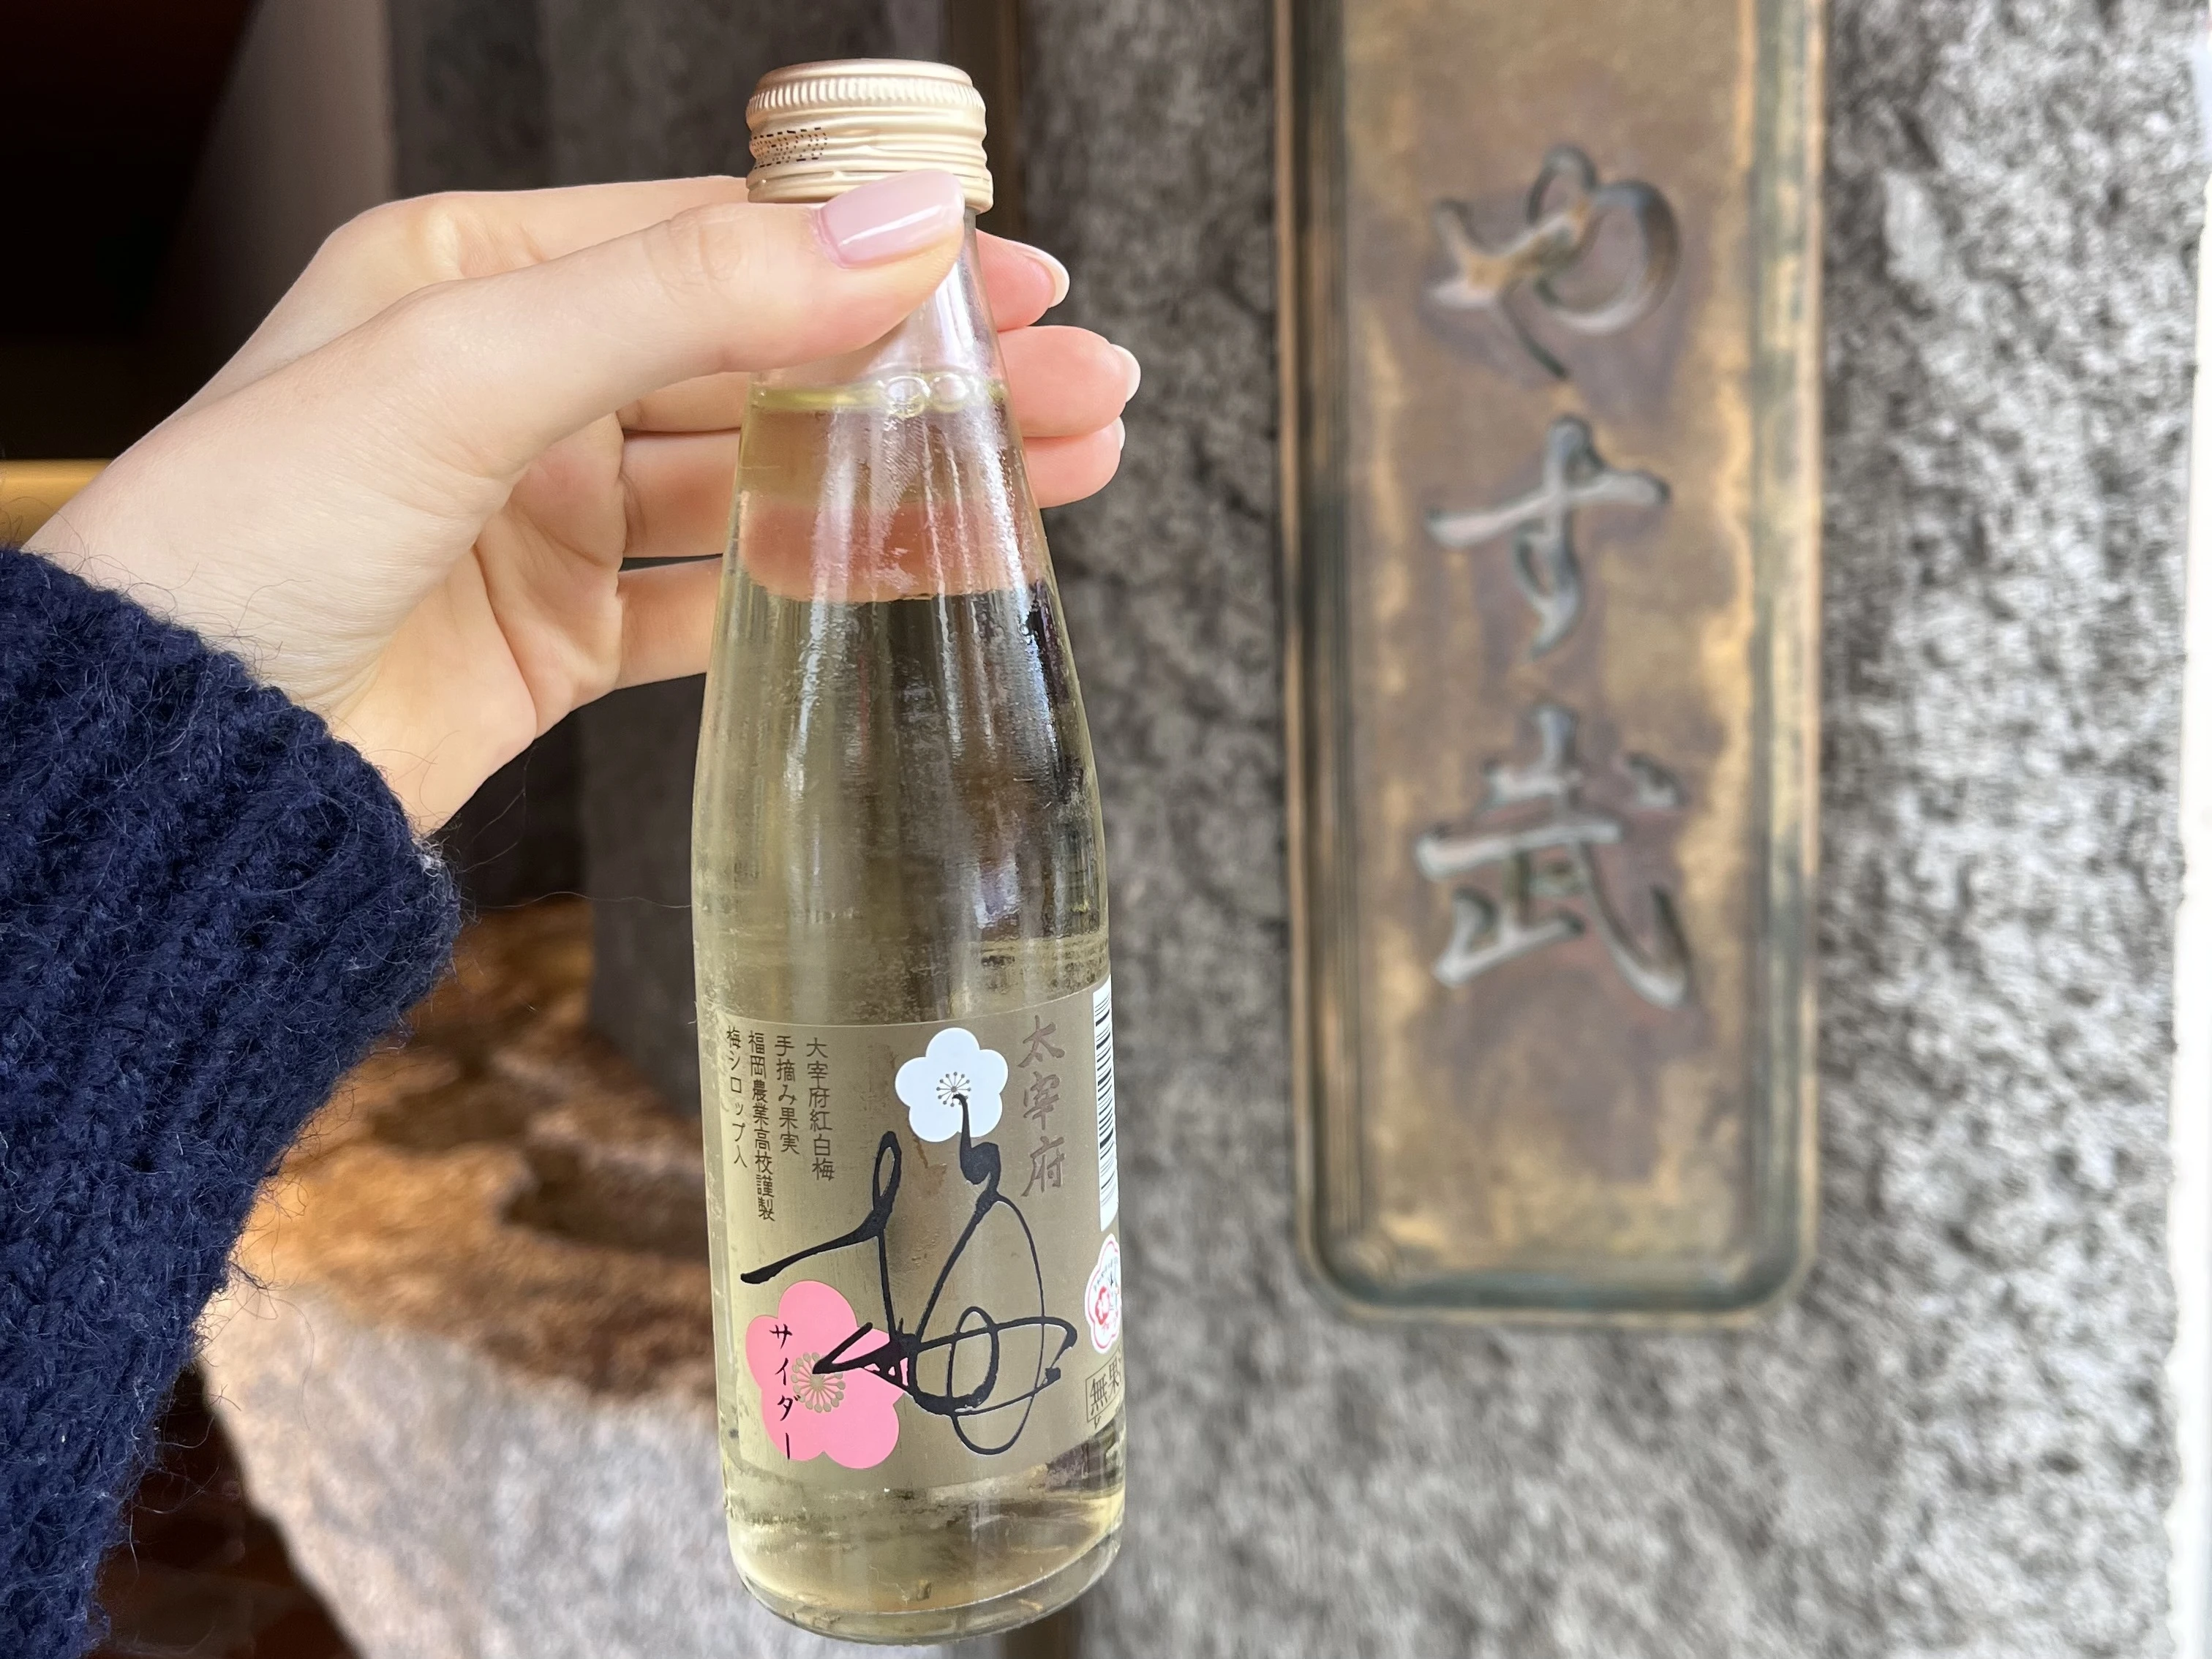  　「太宰府梅サイダー」は、太宰府市内で実った梅を、地元高校の生徒が収穫、加工したシロップをもとに製造している商品だそう✨